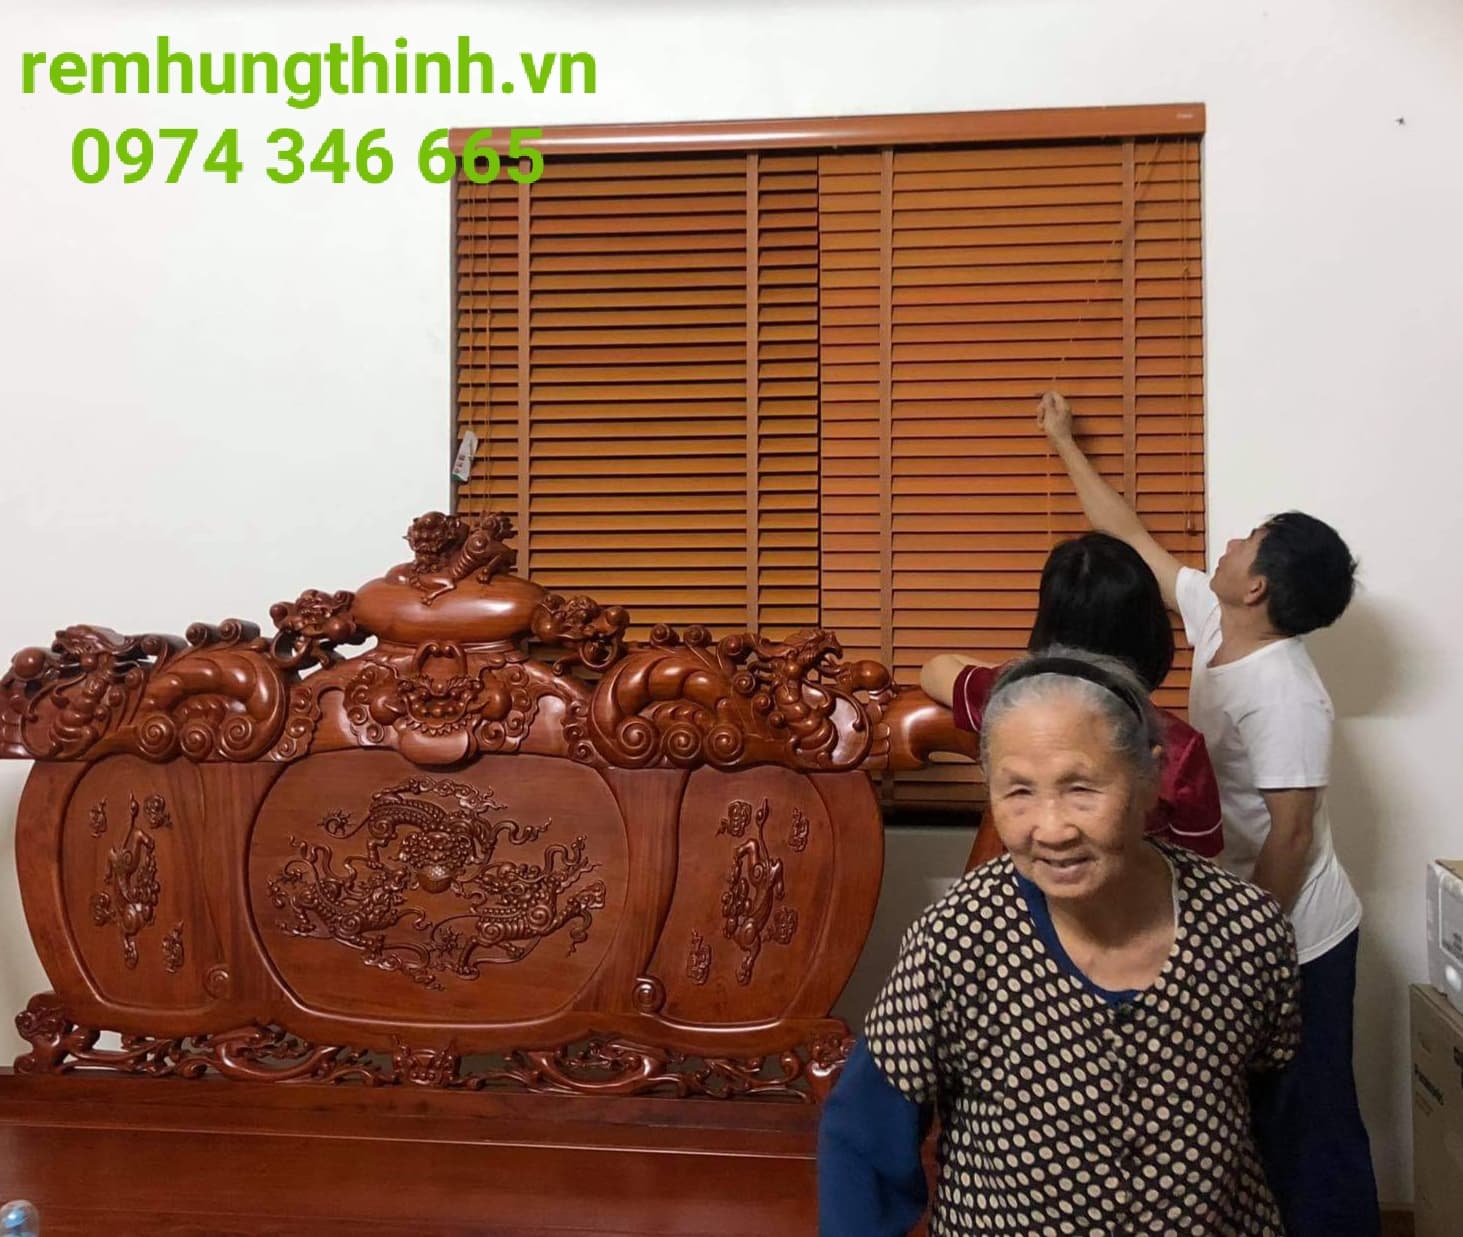 Địa chỉ cung cấp rèm sáo gỗ uy tín tại Triều Khúc, phường Thanh Xuân Nam quận Thanh Xuân